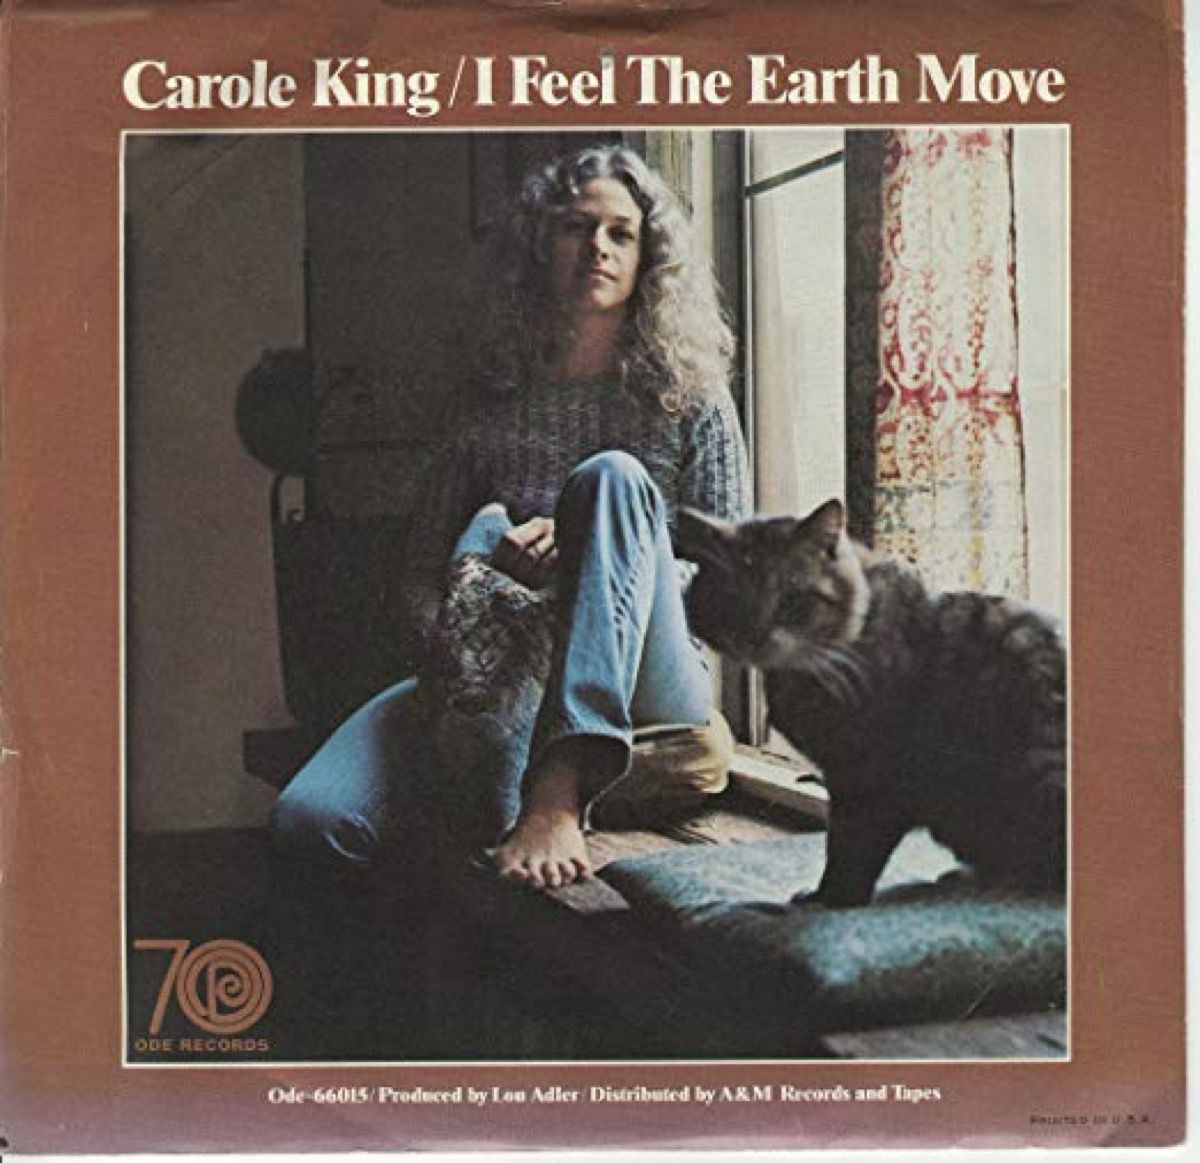 обложка на албум за Карол Кинг, чувствам, че земята се движи, песен от лято 1971